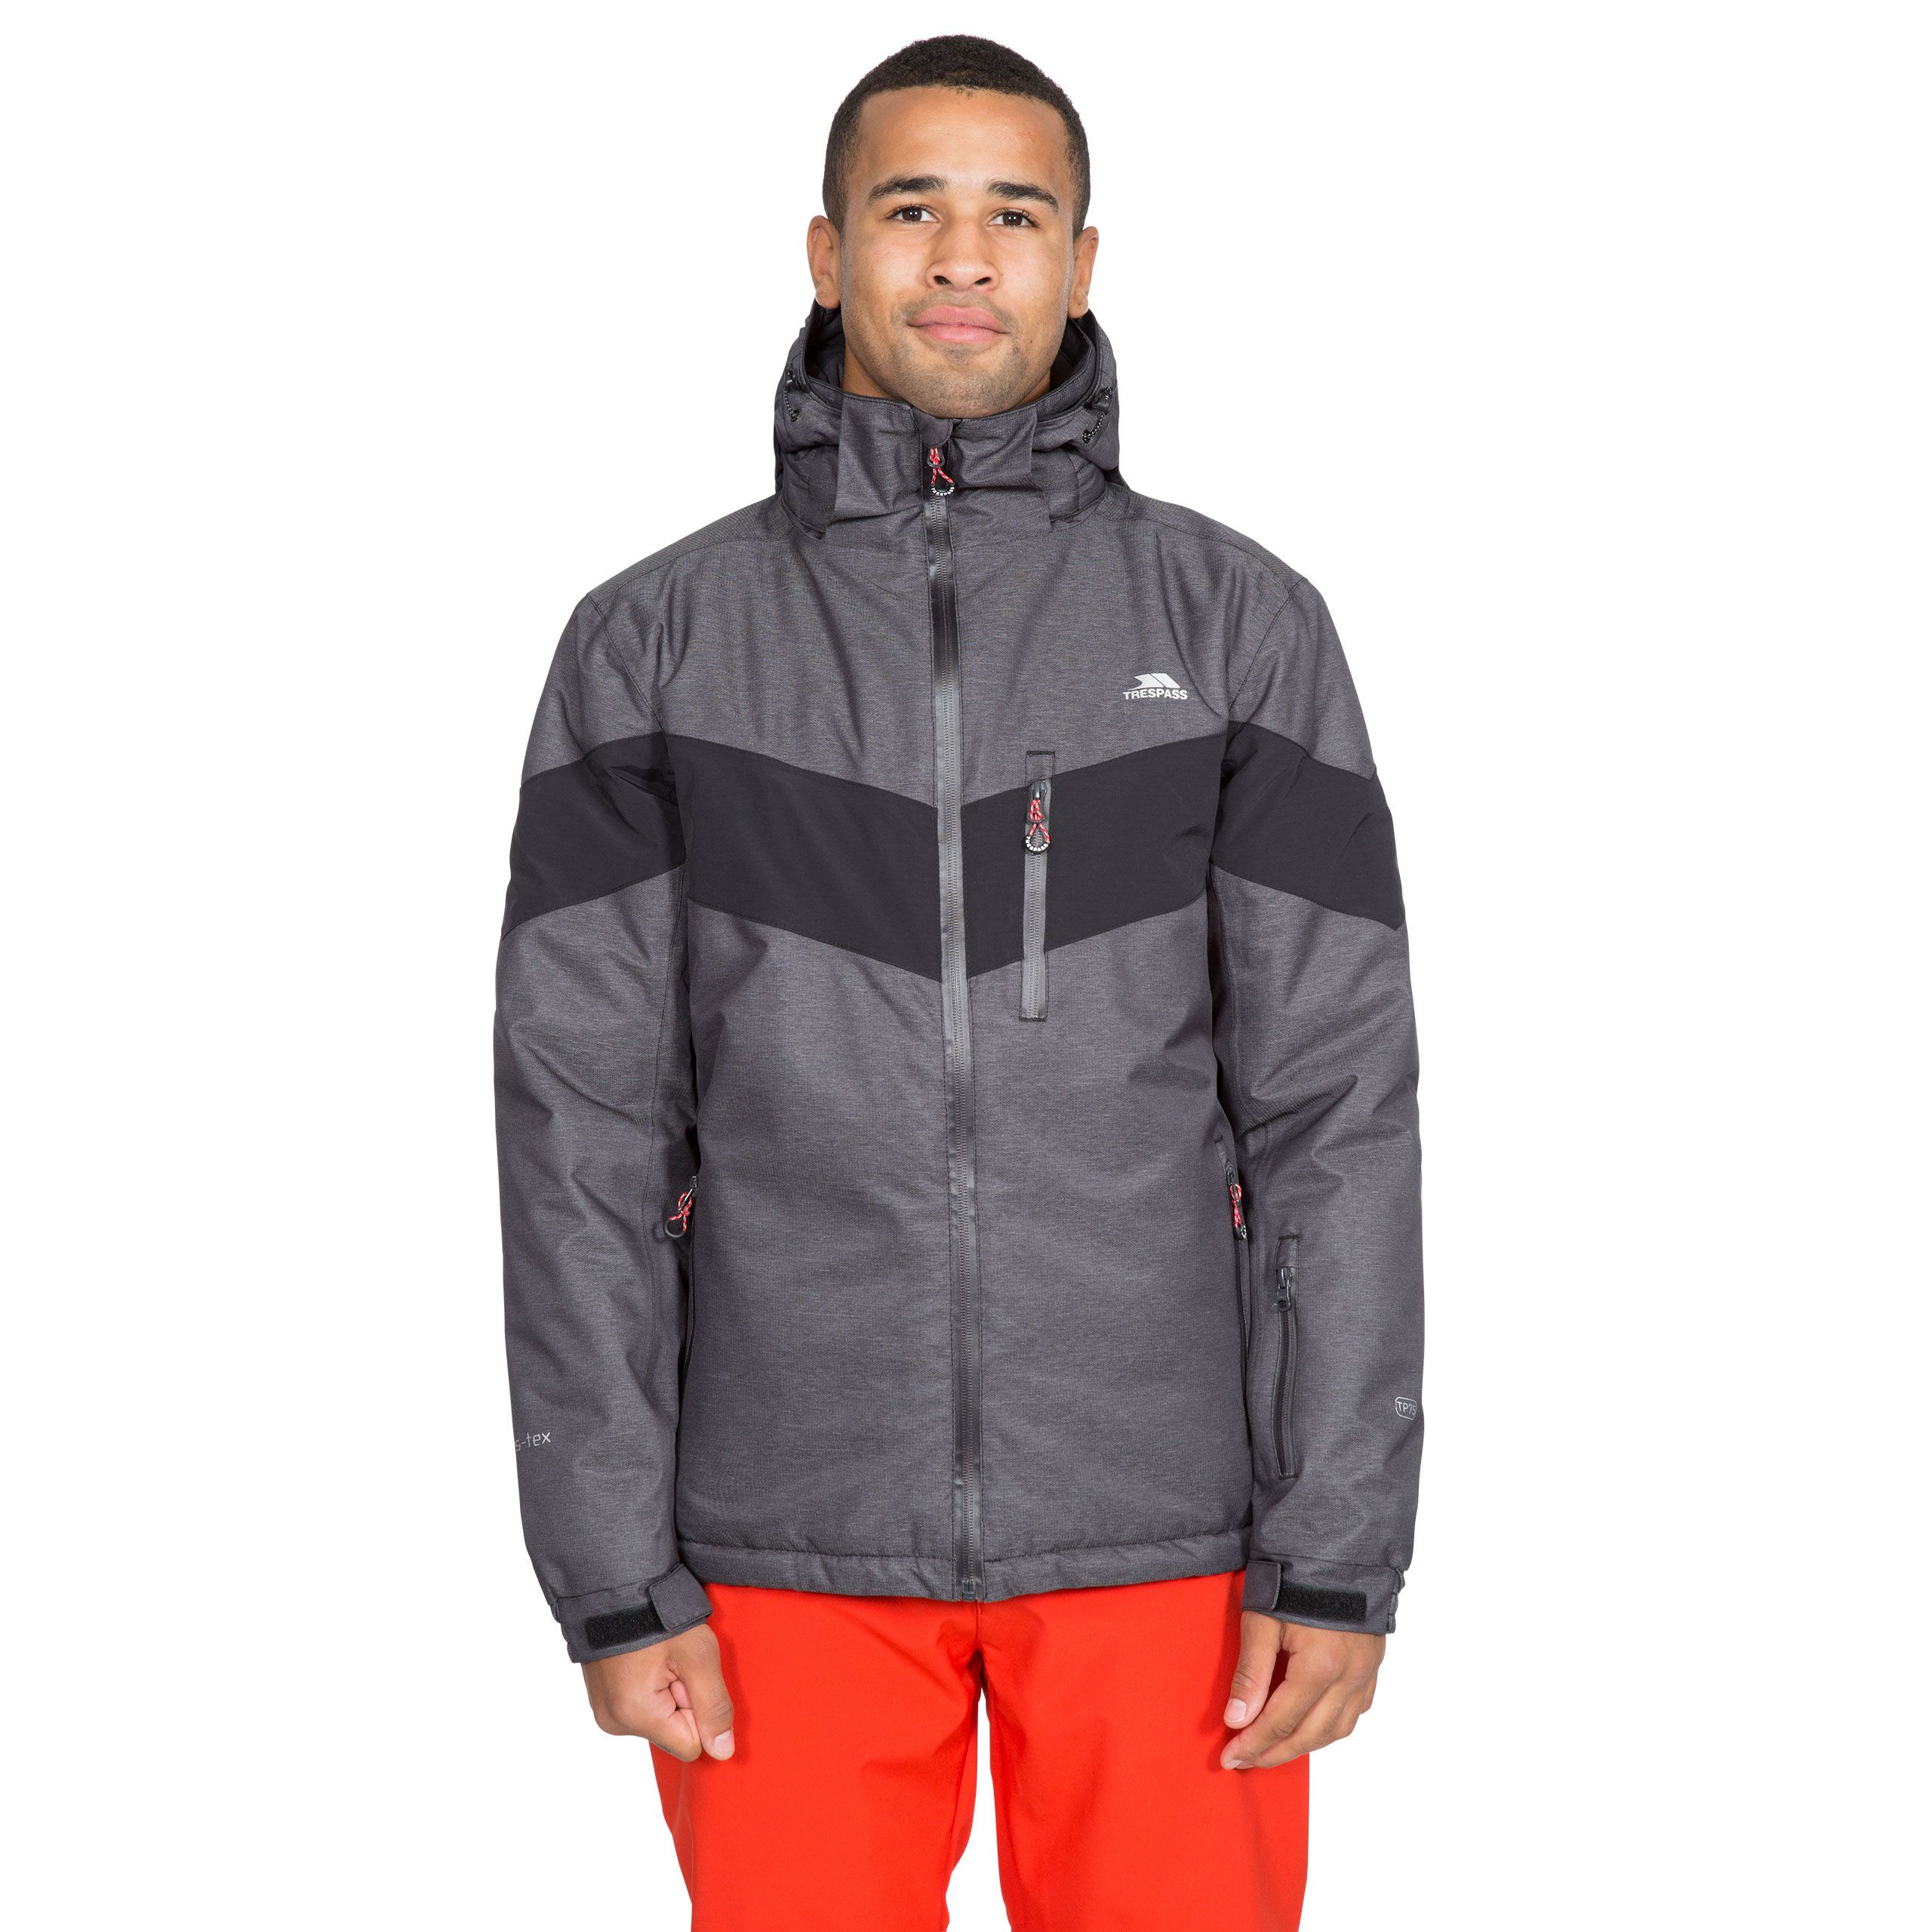 Tinlaw Mens Waterproof Ski Jacket